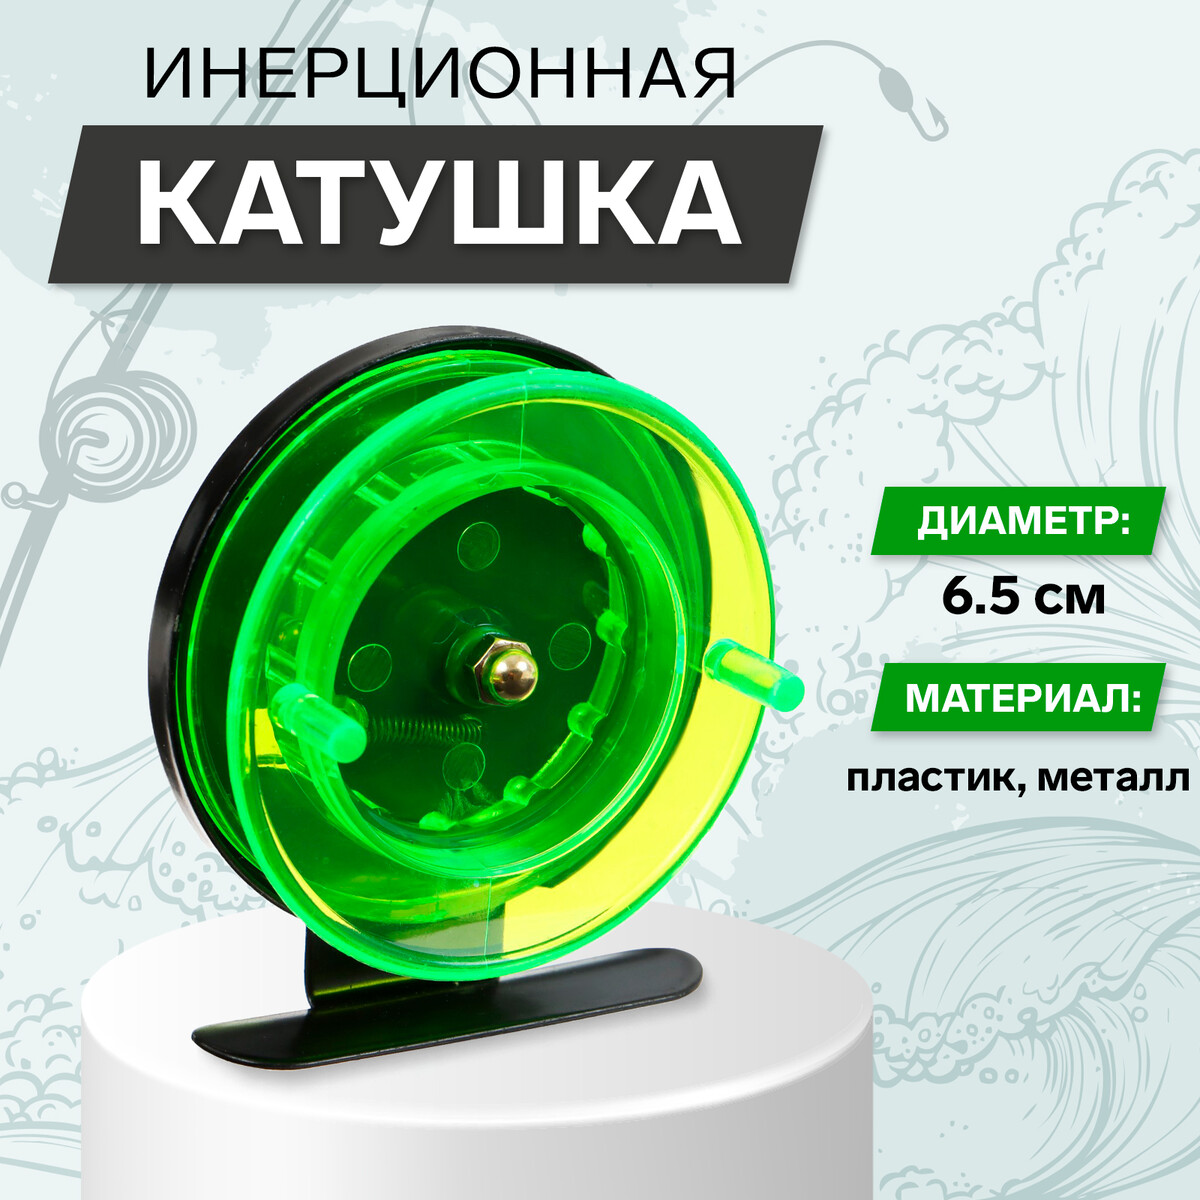 Катушка инерционная, металл пластик, диаметр 6.5 см, цвет черный-зеленый, 701 кустодержатель d 15–17–19 см h 44 см 3 кольца металл зеленый